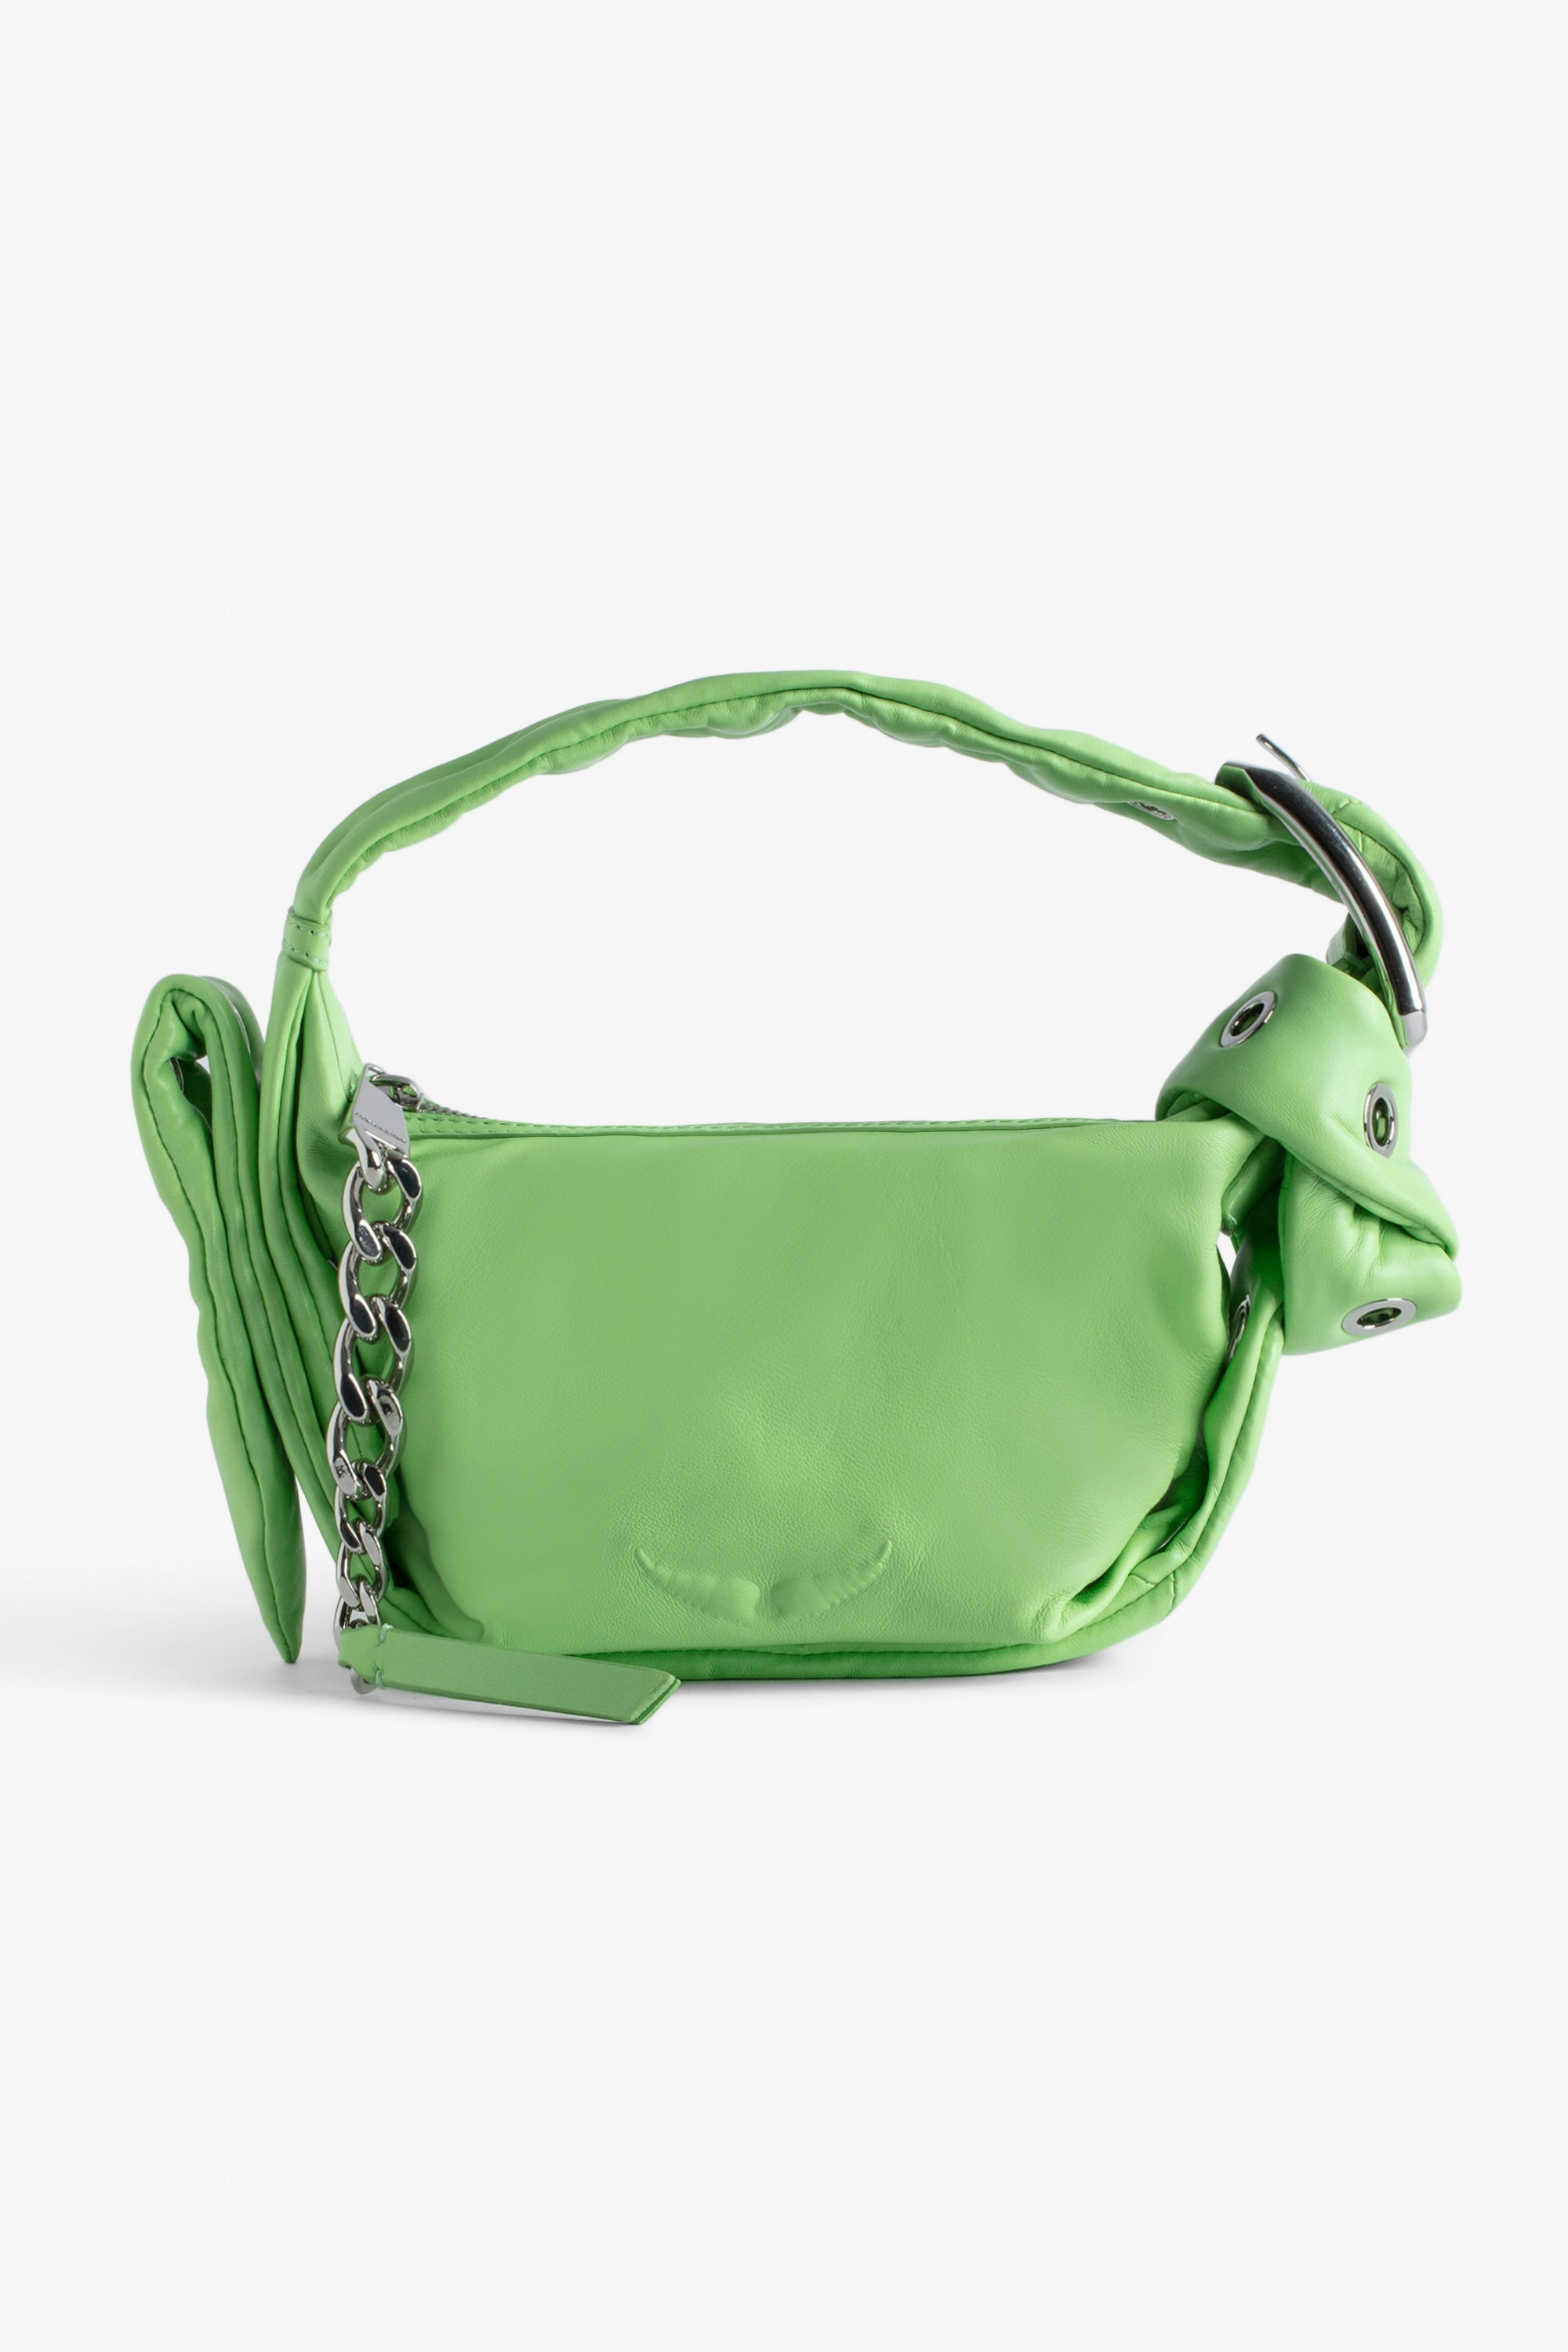 Handtasche Le Cecilia XS Obsession - Kleine Tasche aus grünem Glattleder mit Schulterriemen und C-förmiger Metallschnalle für Damen.